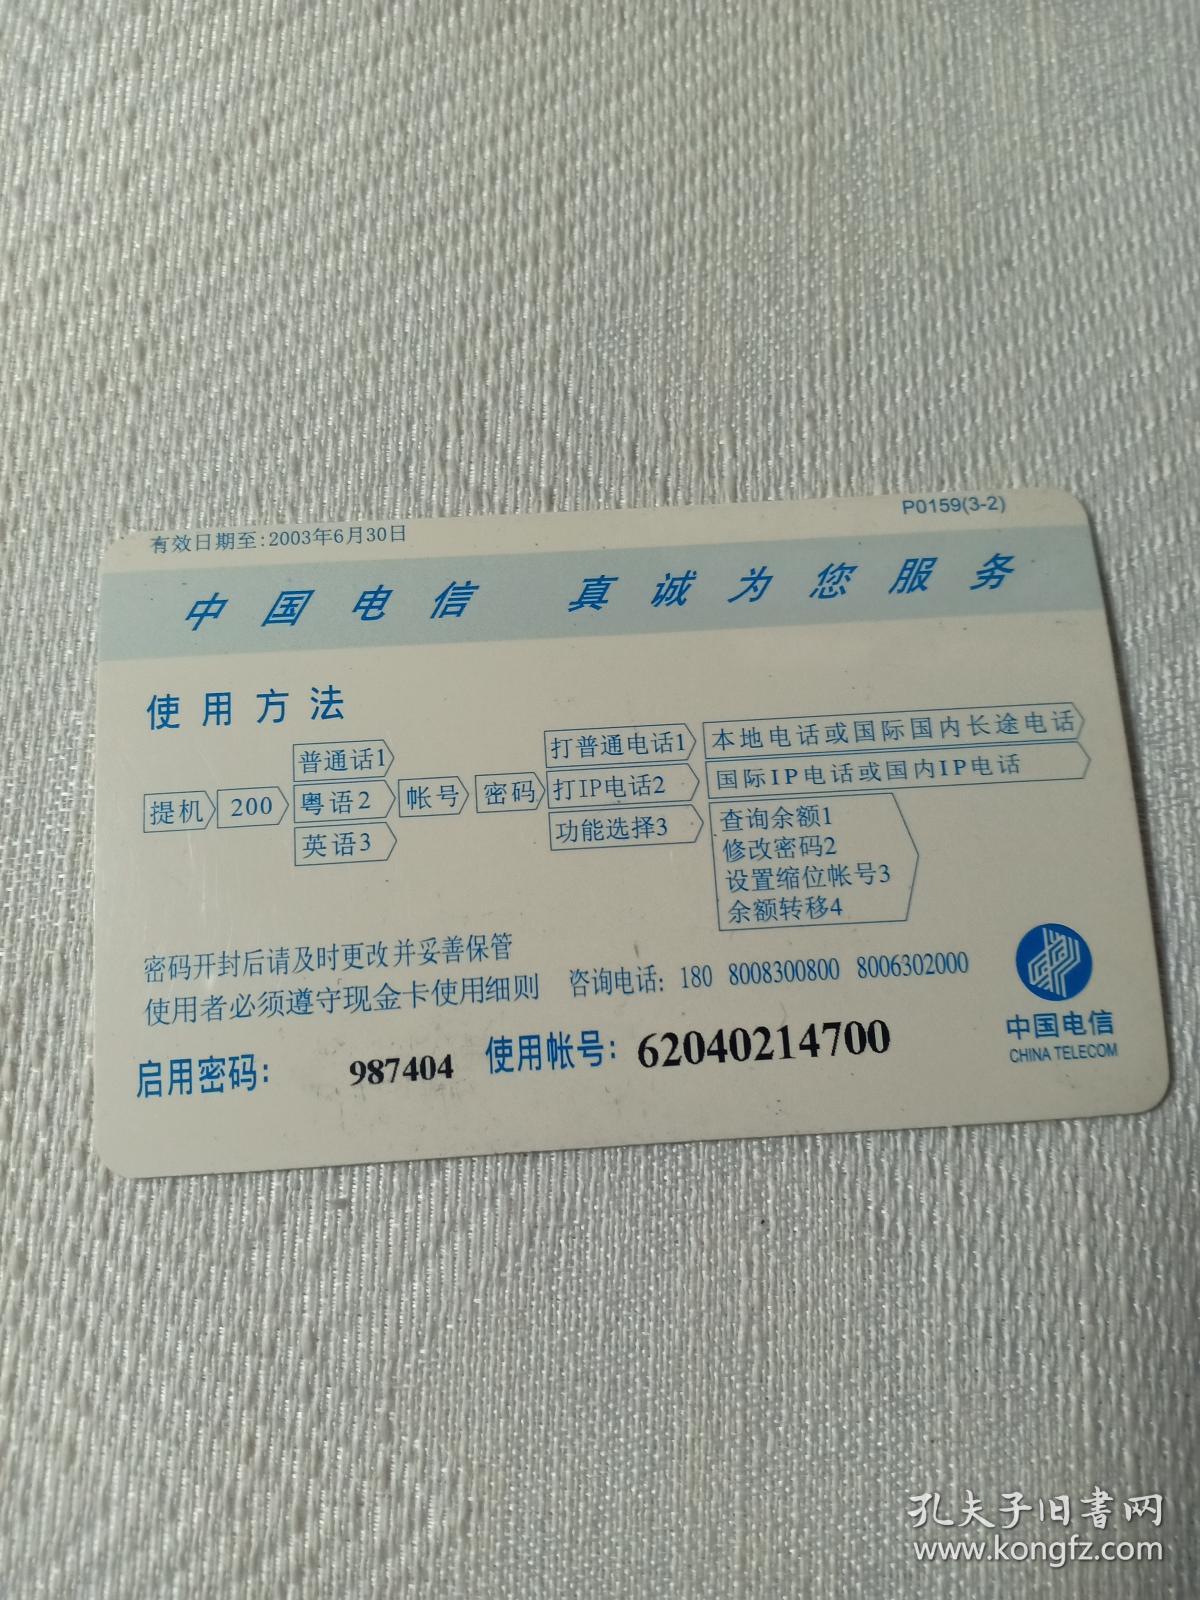 卡片567 香港风情 城市素描 红勘隧道交通景象 30元  200电话卡 中国电信 P0159（3-2） 电话卡